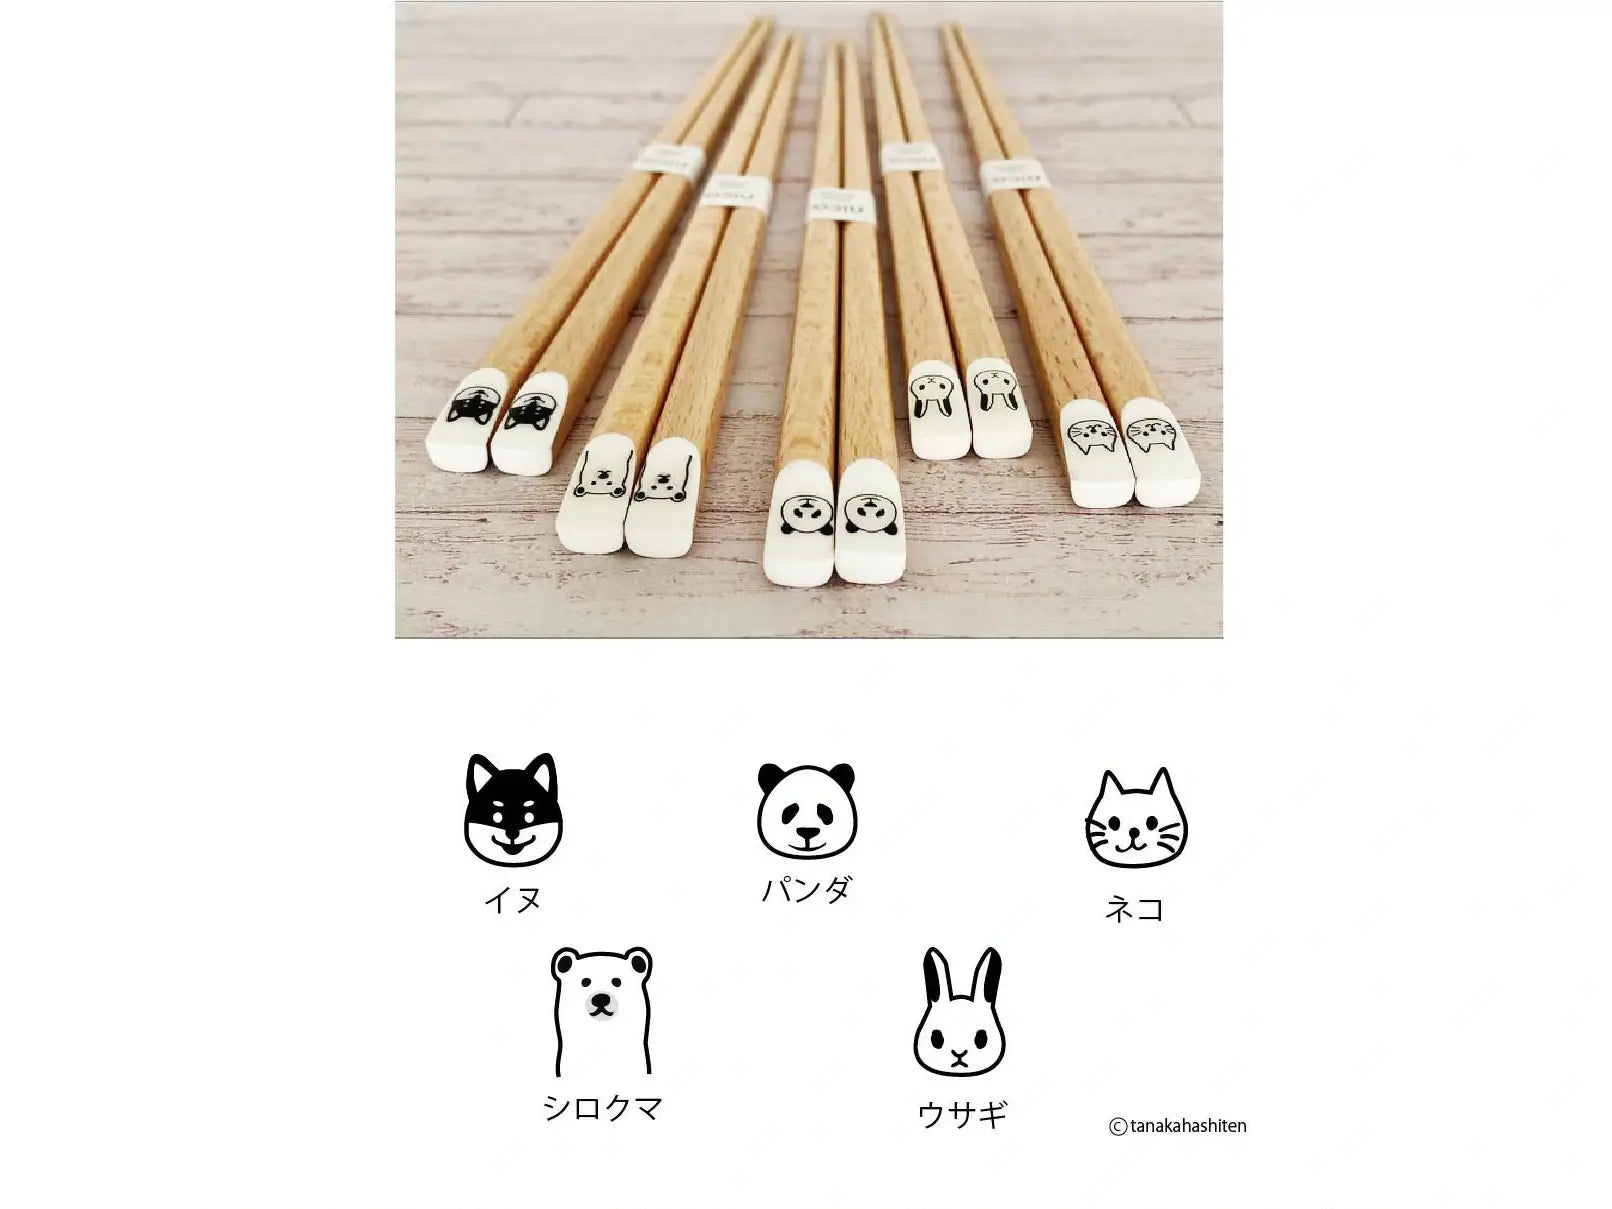 Tanaka Hashiten NICO. Chopsticks 22.5cm